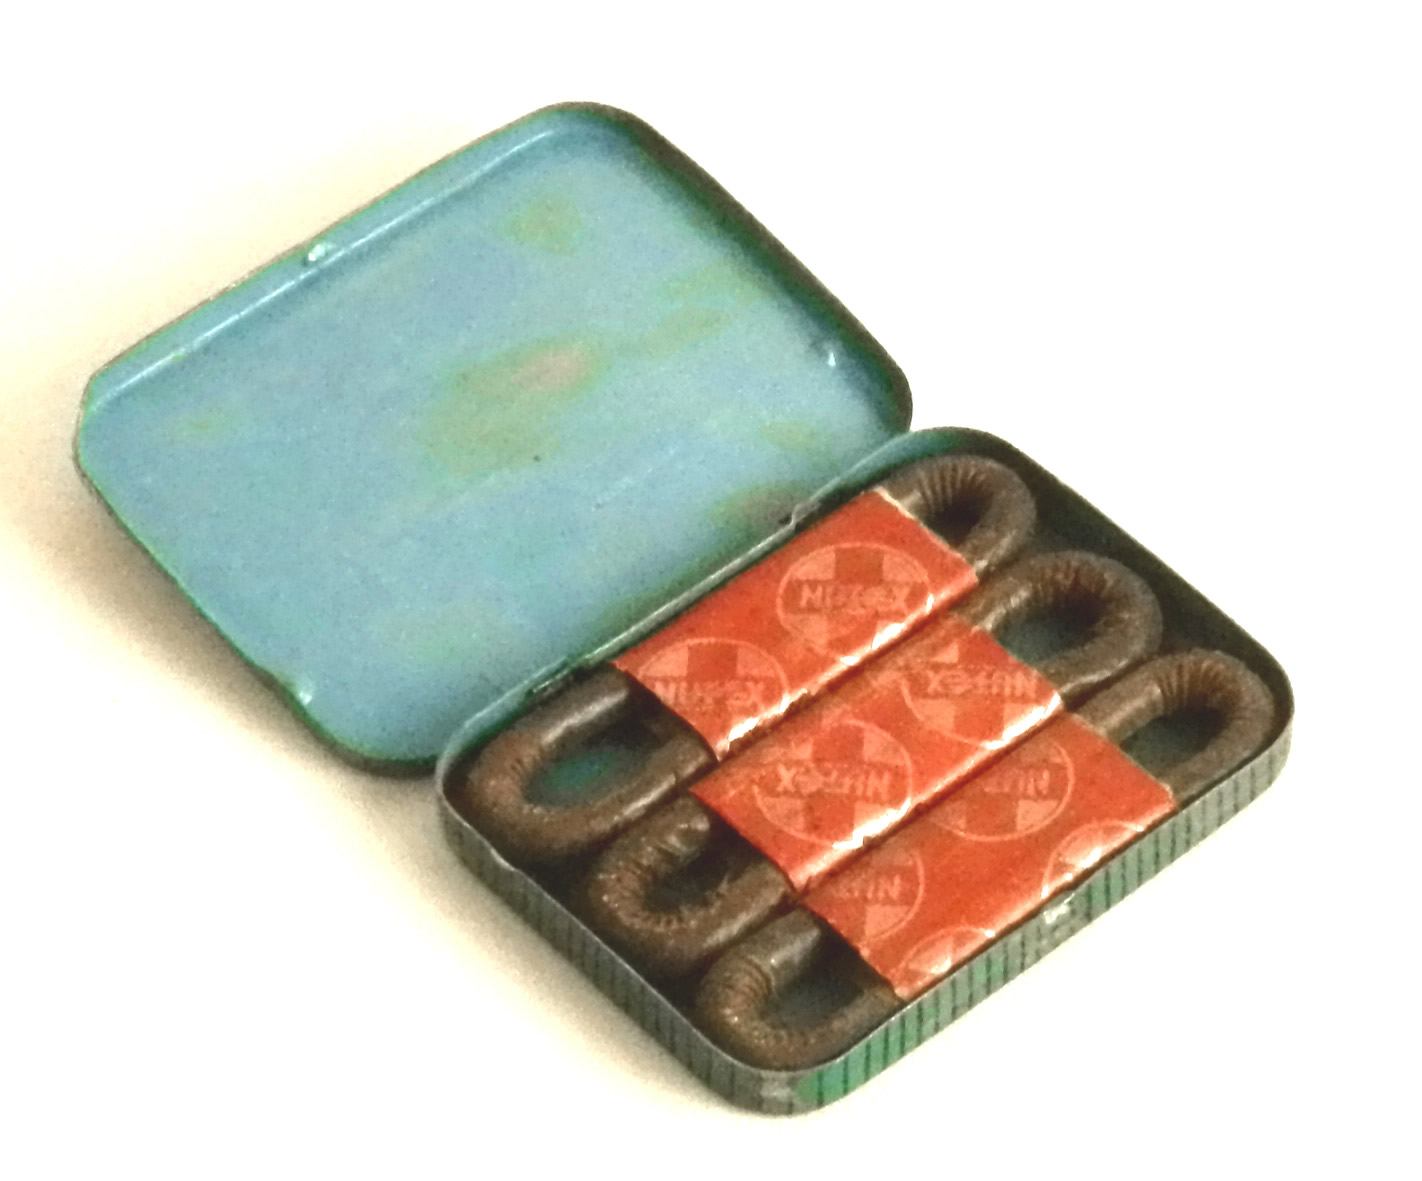 NUTEX Radium Condoms (ca. 1940s)